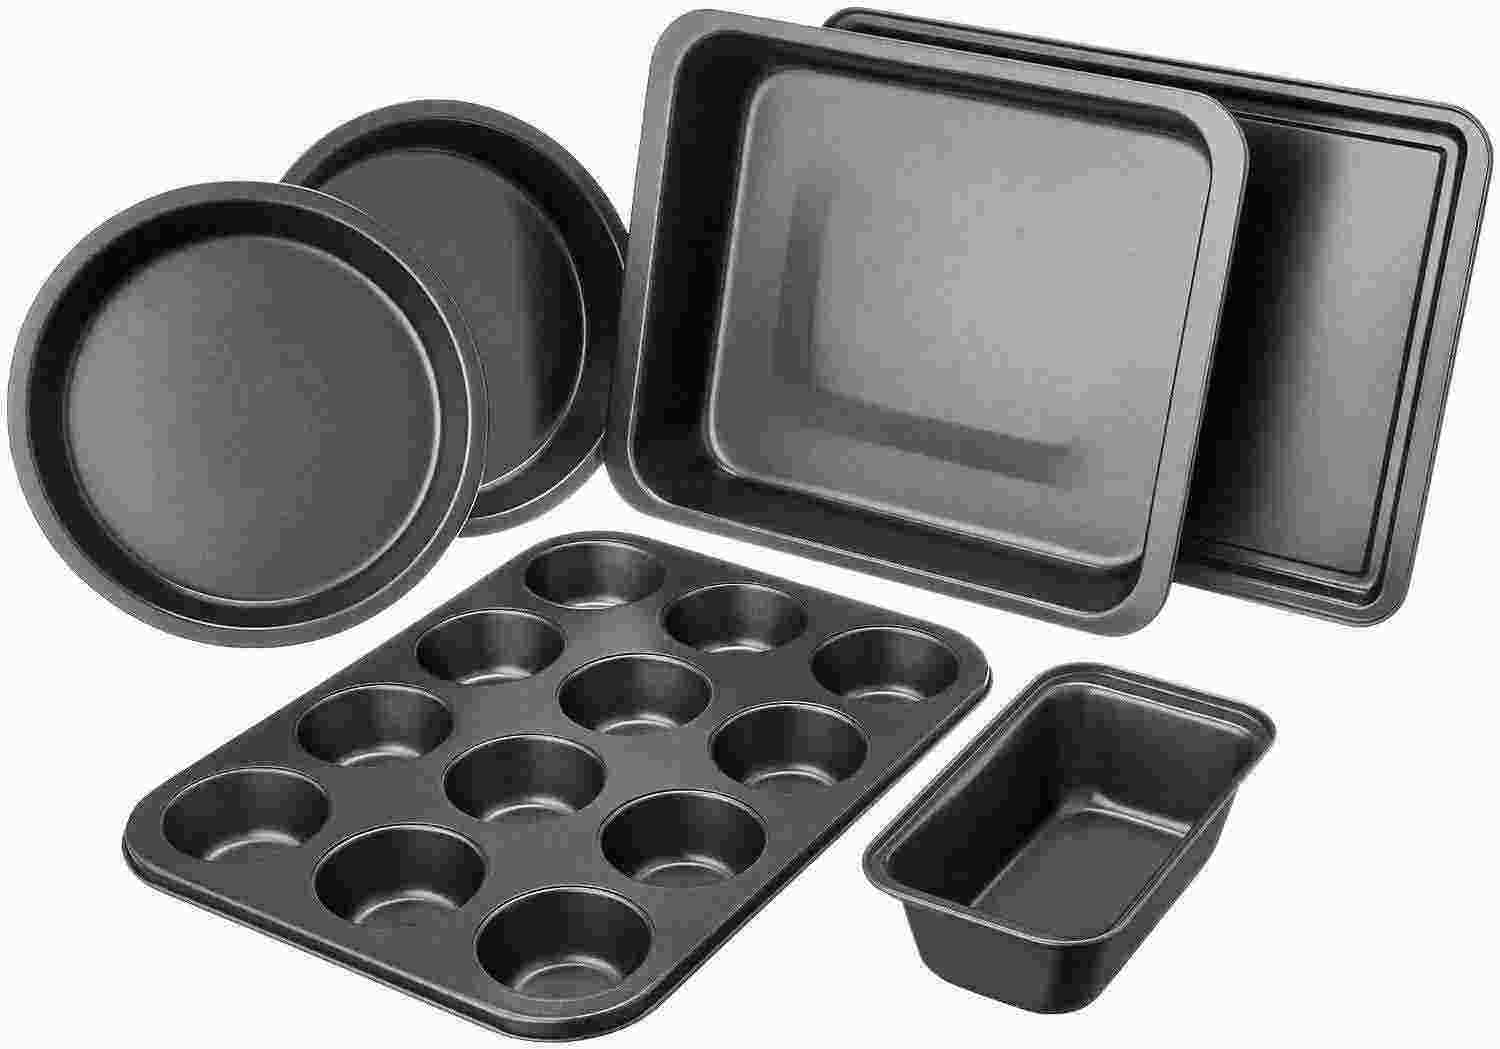 Amazon Vendor 6-Piece Bakeware Set Carbon Steel Cookware Set